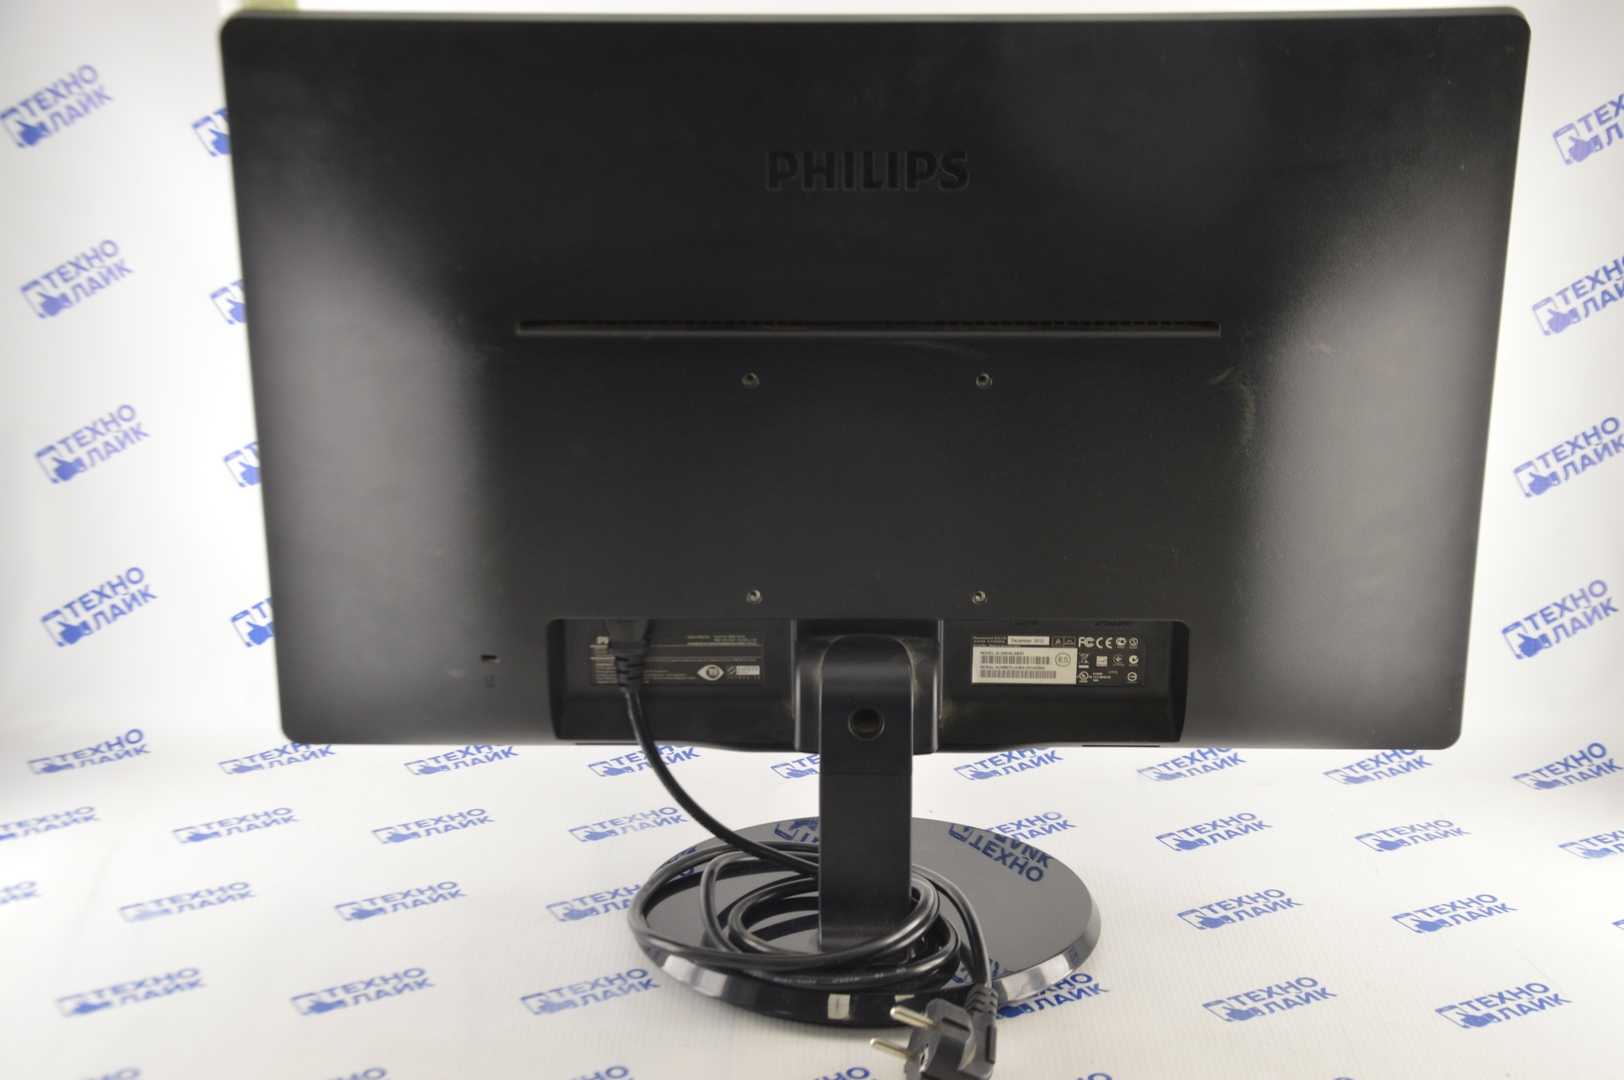 Монитор Philips 236V4LSB - подробные характеристики обзоры видео фото Цены в интернет-магазинах где можно купить монитор Philips 236V4LSB